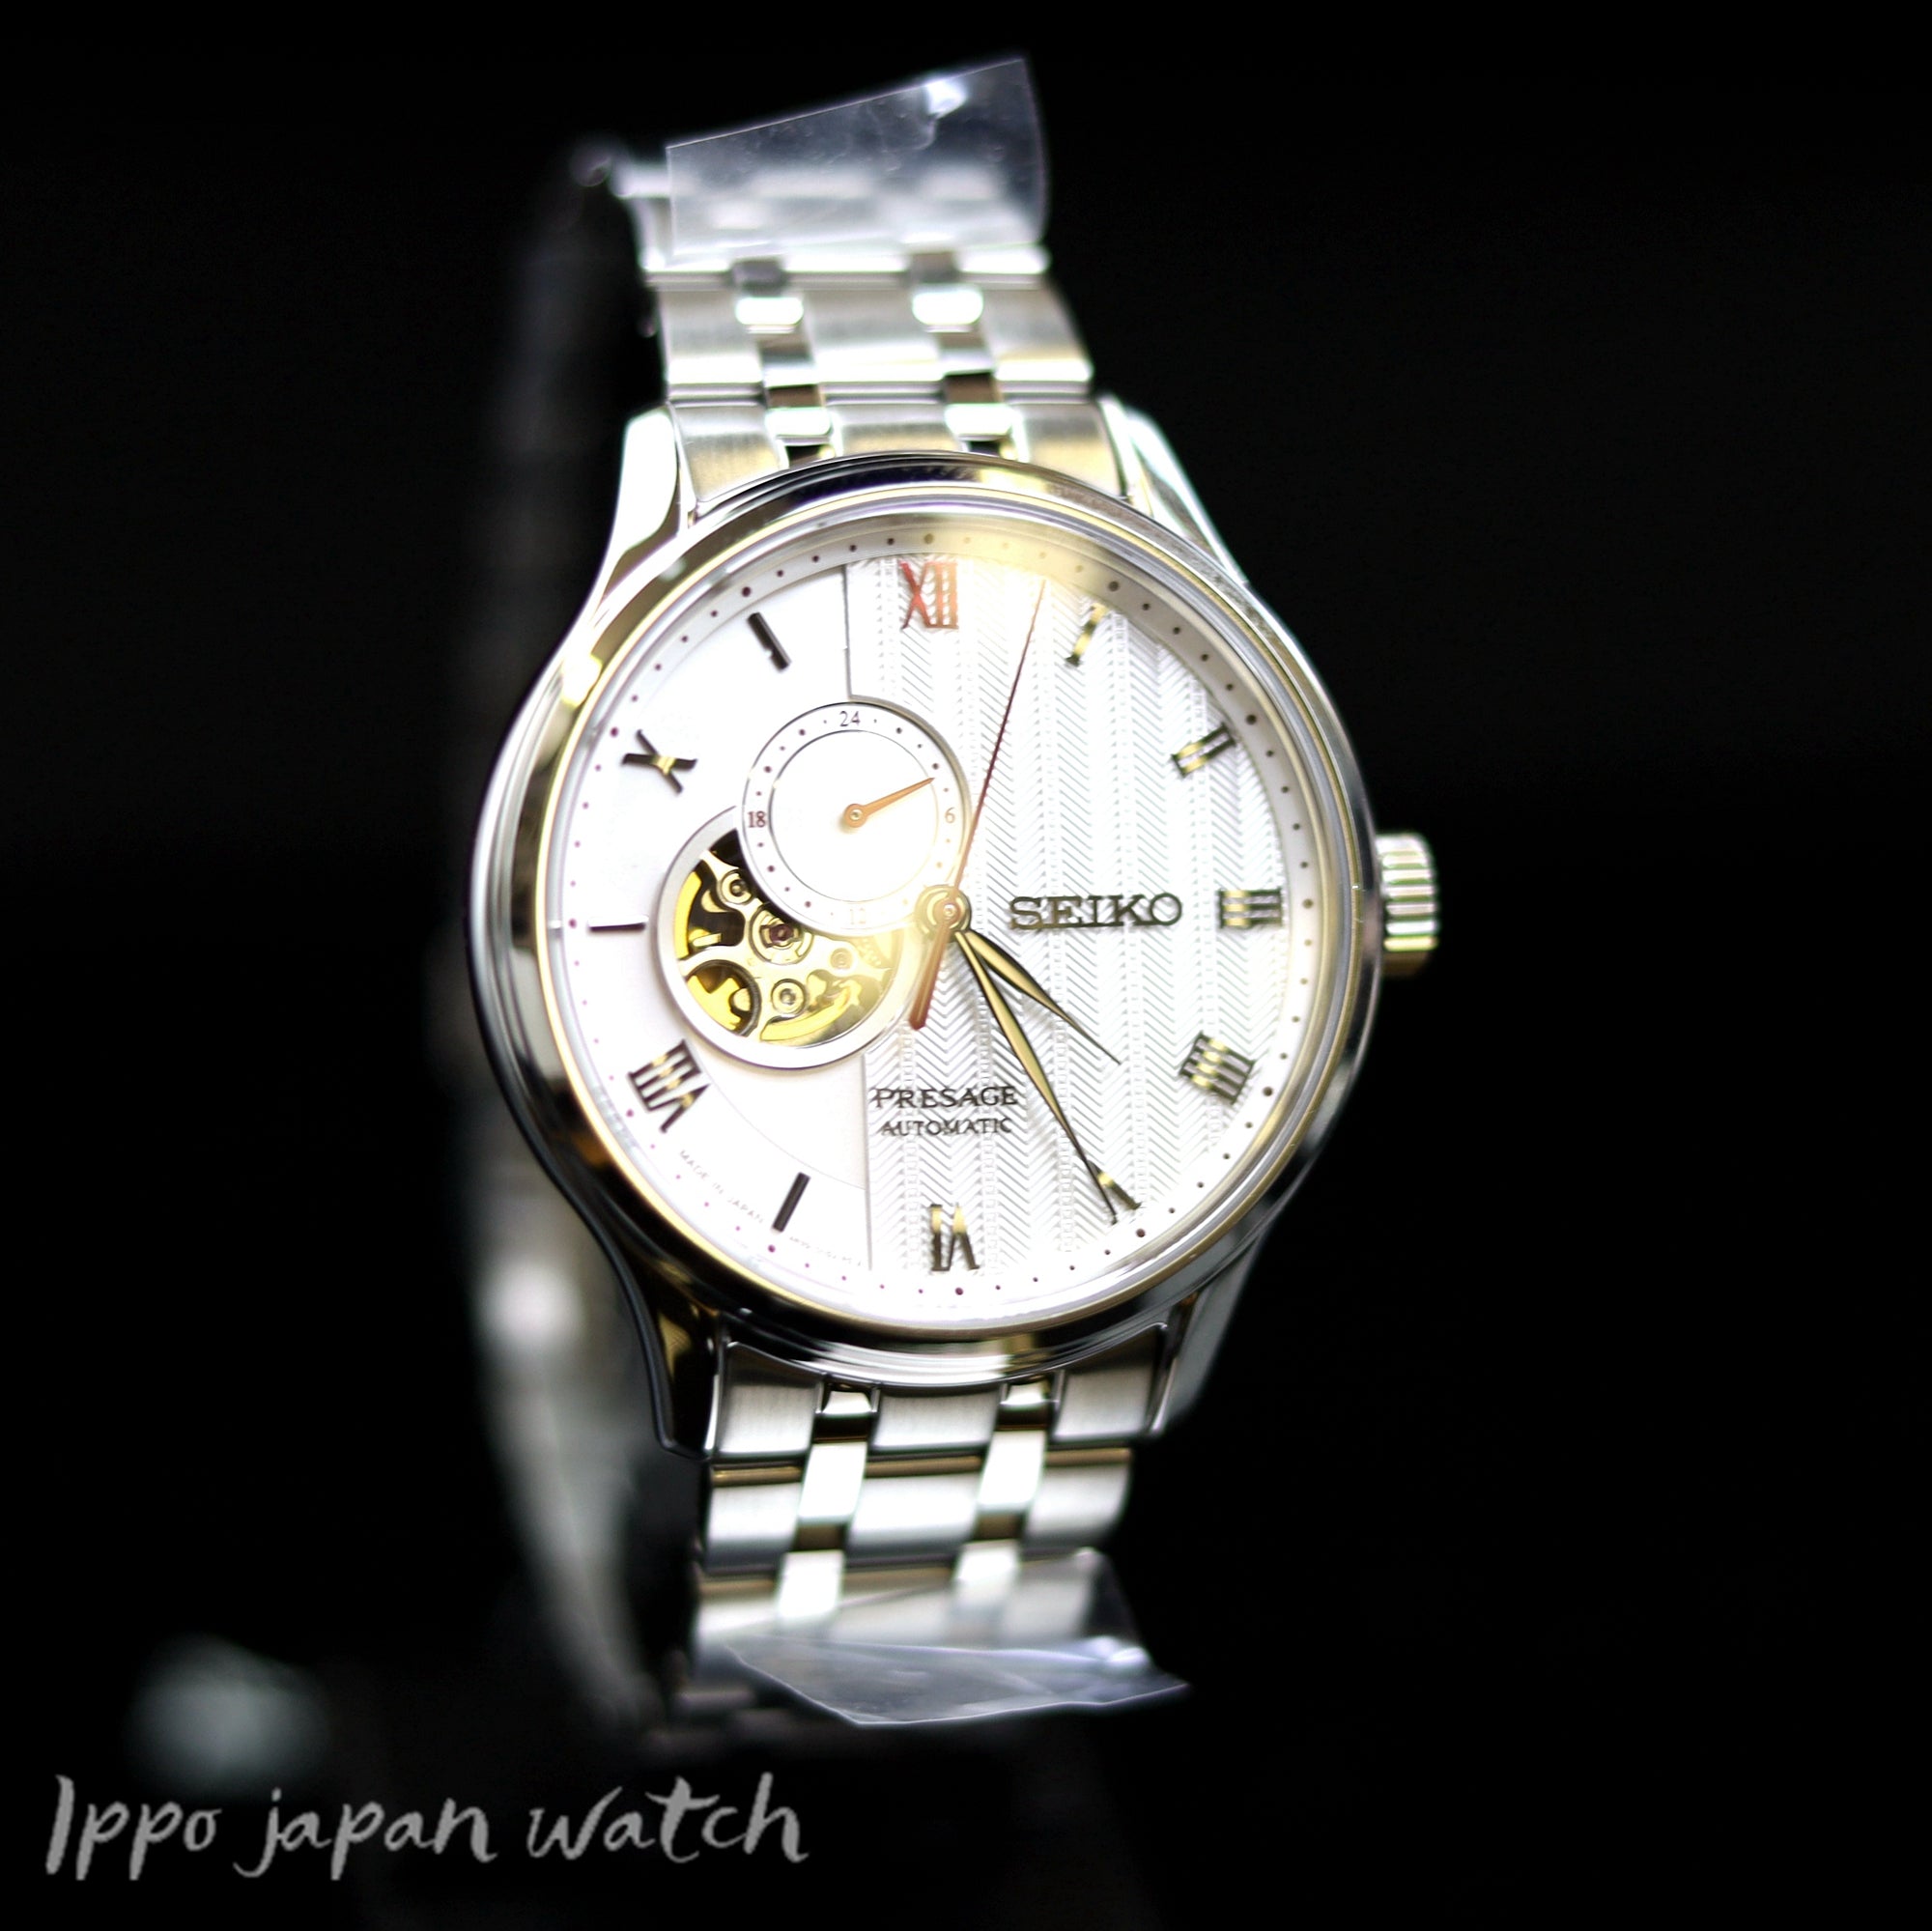 SEIKO Presage SARY SSAJ1 Mechanical 4R watch – IPPO JAPAN